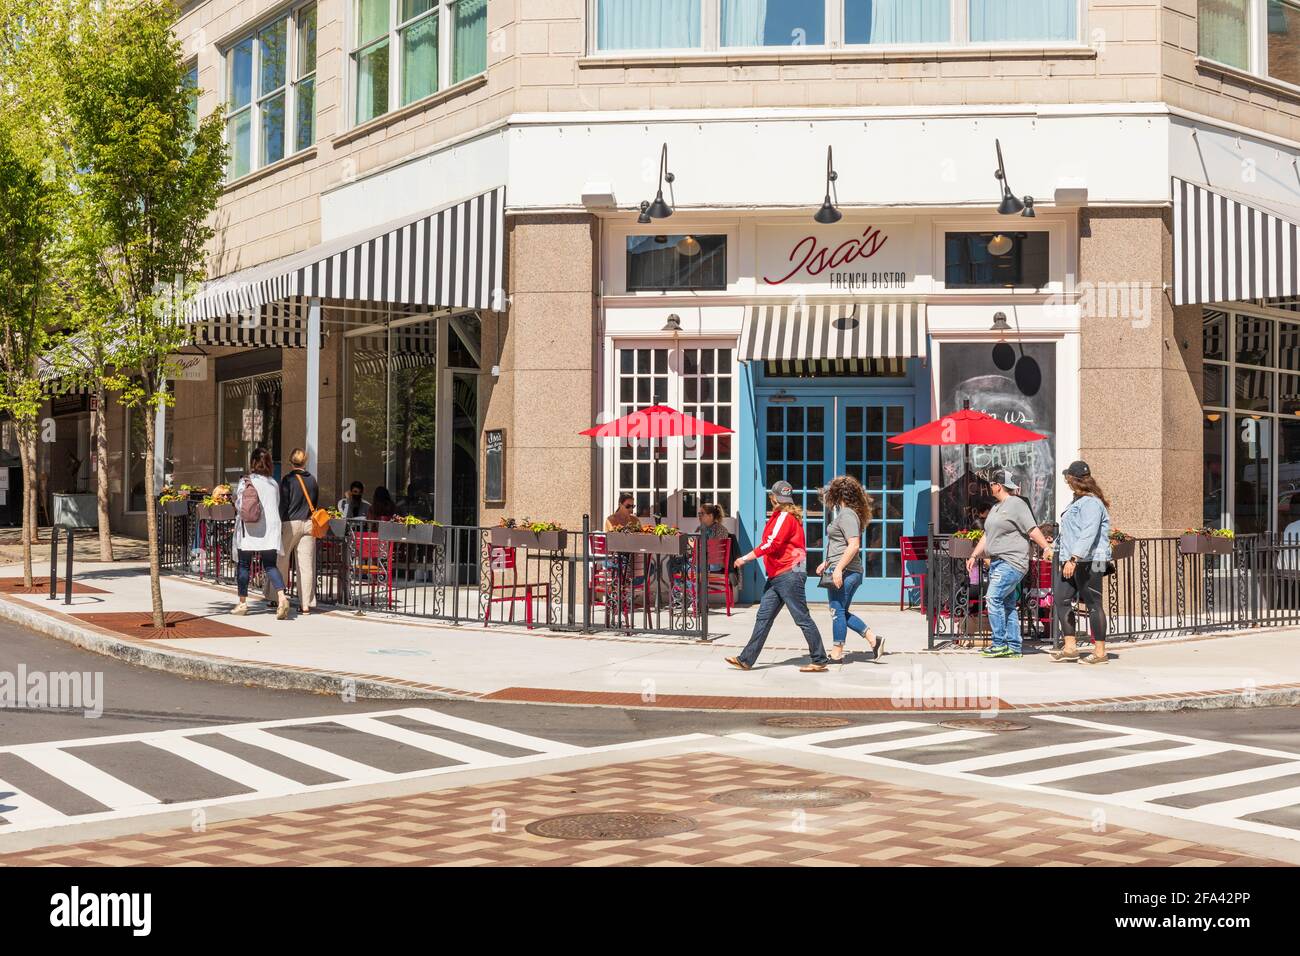 ASHEVILLE, NC, USA-11 APRIL 2021: ISA's French Bistro, an einer Ecke in der Innenstadt, mit Leuten, die an Tischen im Freien sitzen und anderen, die vorbei gehen. Stockfoto